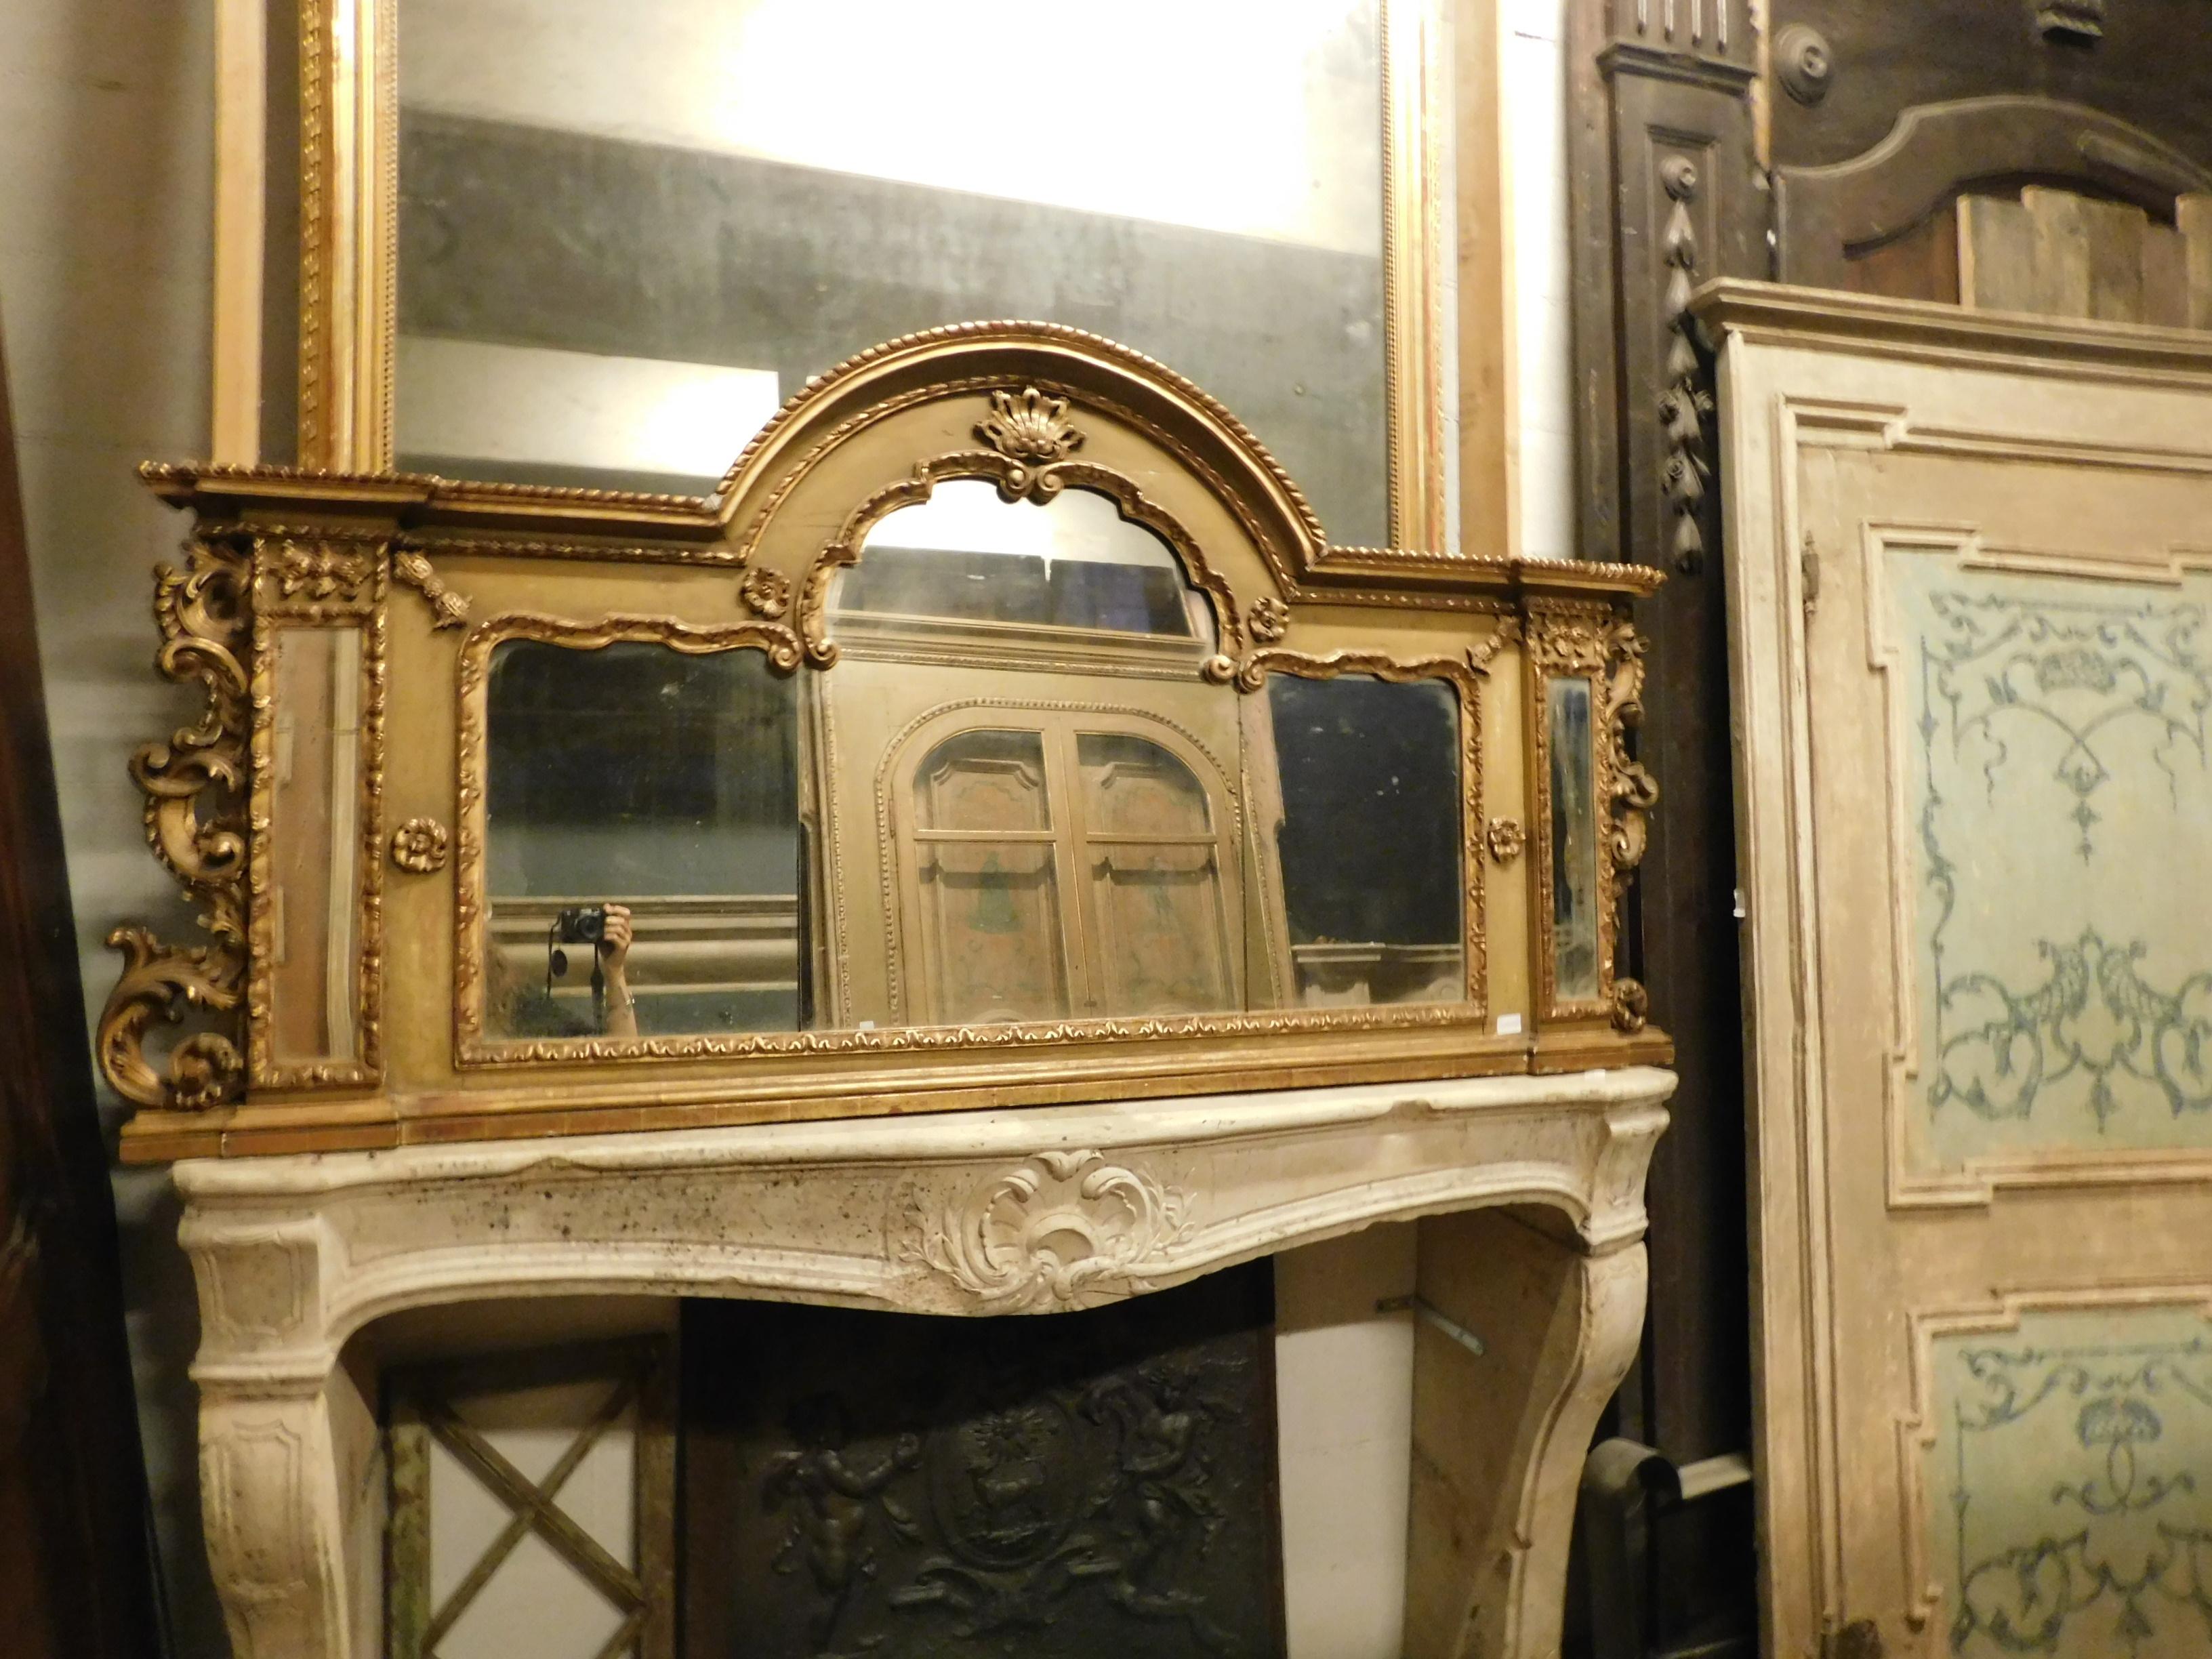 Miroir ancien en bois, de forme rectangulaire avec une partie centrale en arc, cadre en bois richement sculpté, laqué et doré, décorations avec des fleurs et des formes de l'époque, fabriqué à la main au 20e siècle en Italie.
Idéal dans une salle